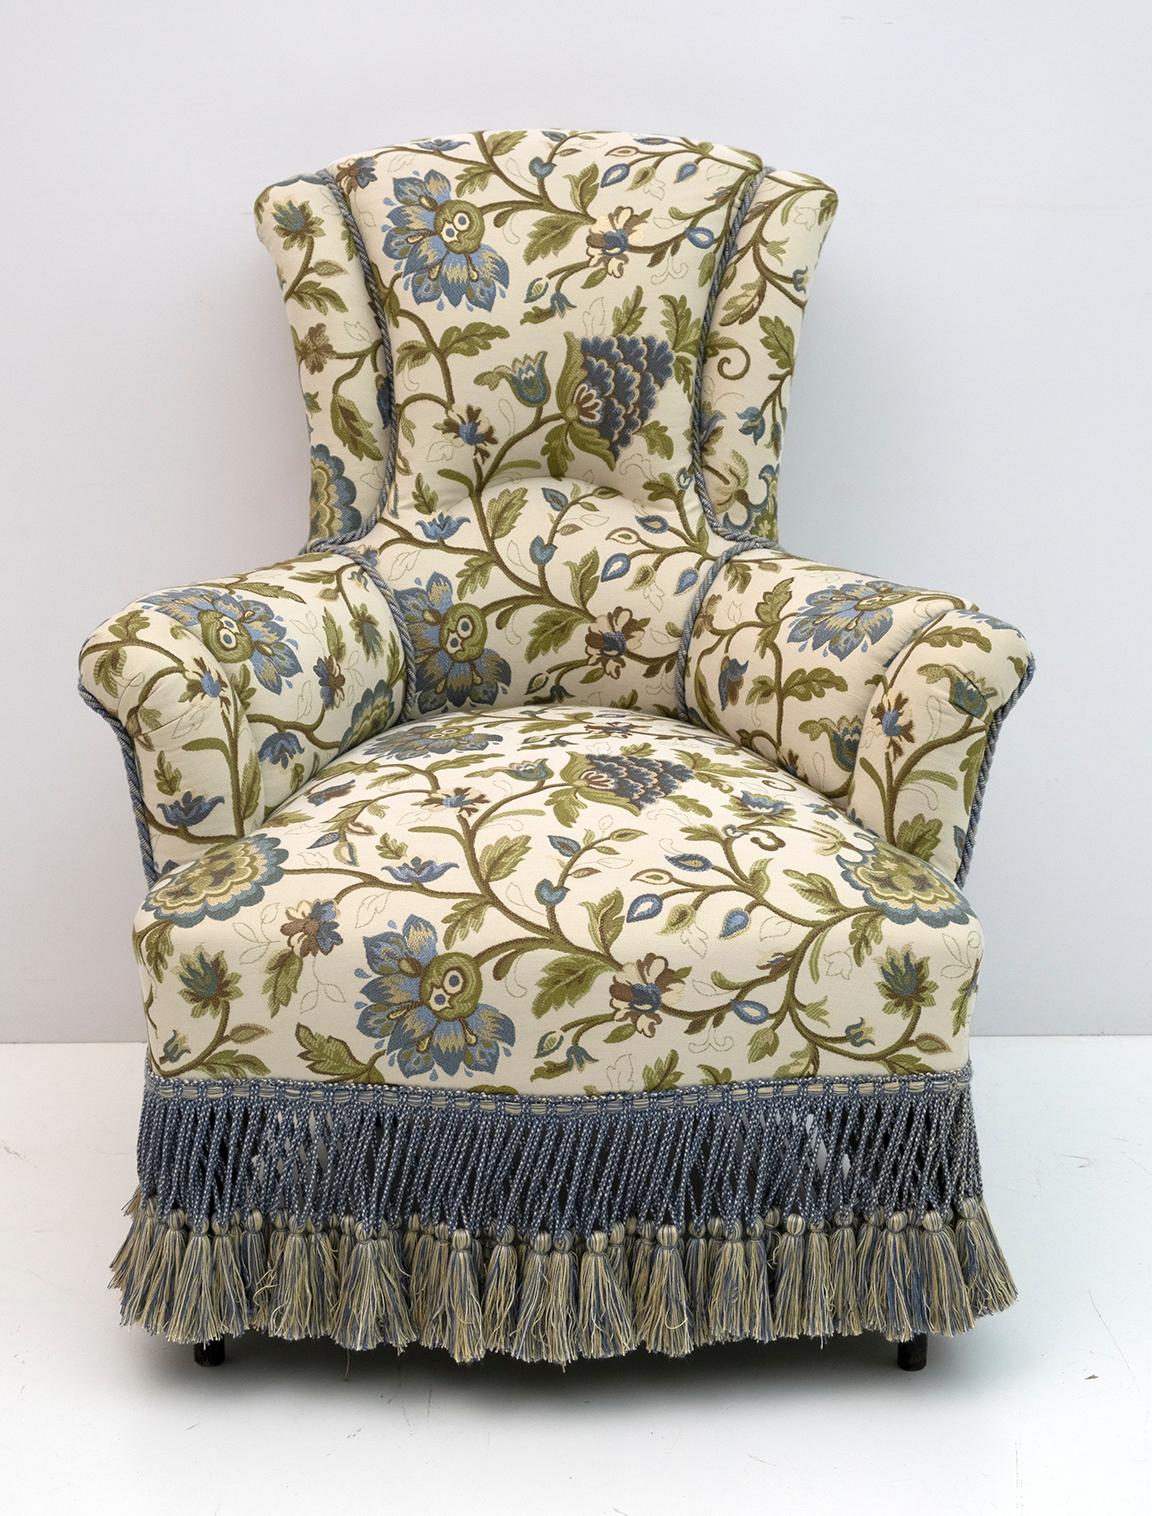 Paar Sessel aus dem 19. Jahrhundert, Periode Napoleon III. Die Sessel wurden restauriert und die Polsterung wurde durch einen schönen italienischen Brokat ersetzt. Frankreich, 1870.

Der Preis bezieht sich auf einen einzelnen Sessel.